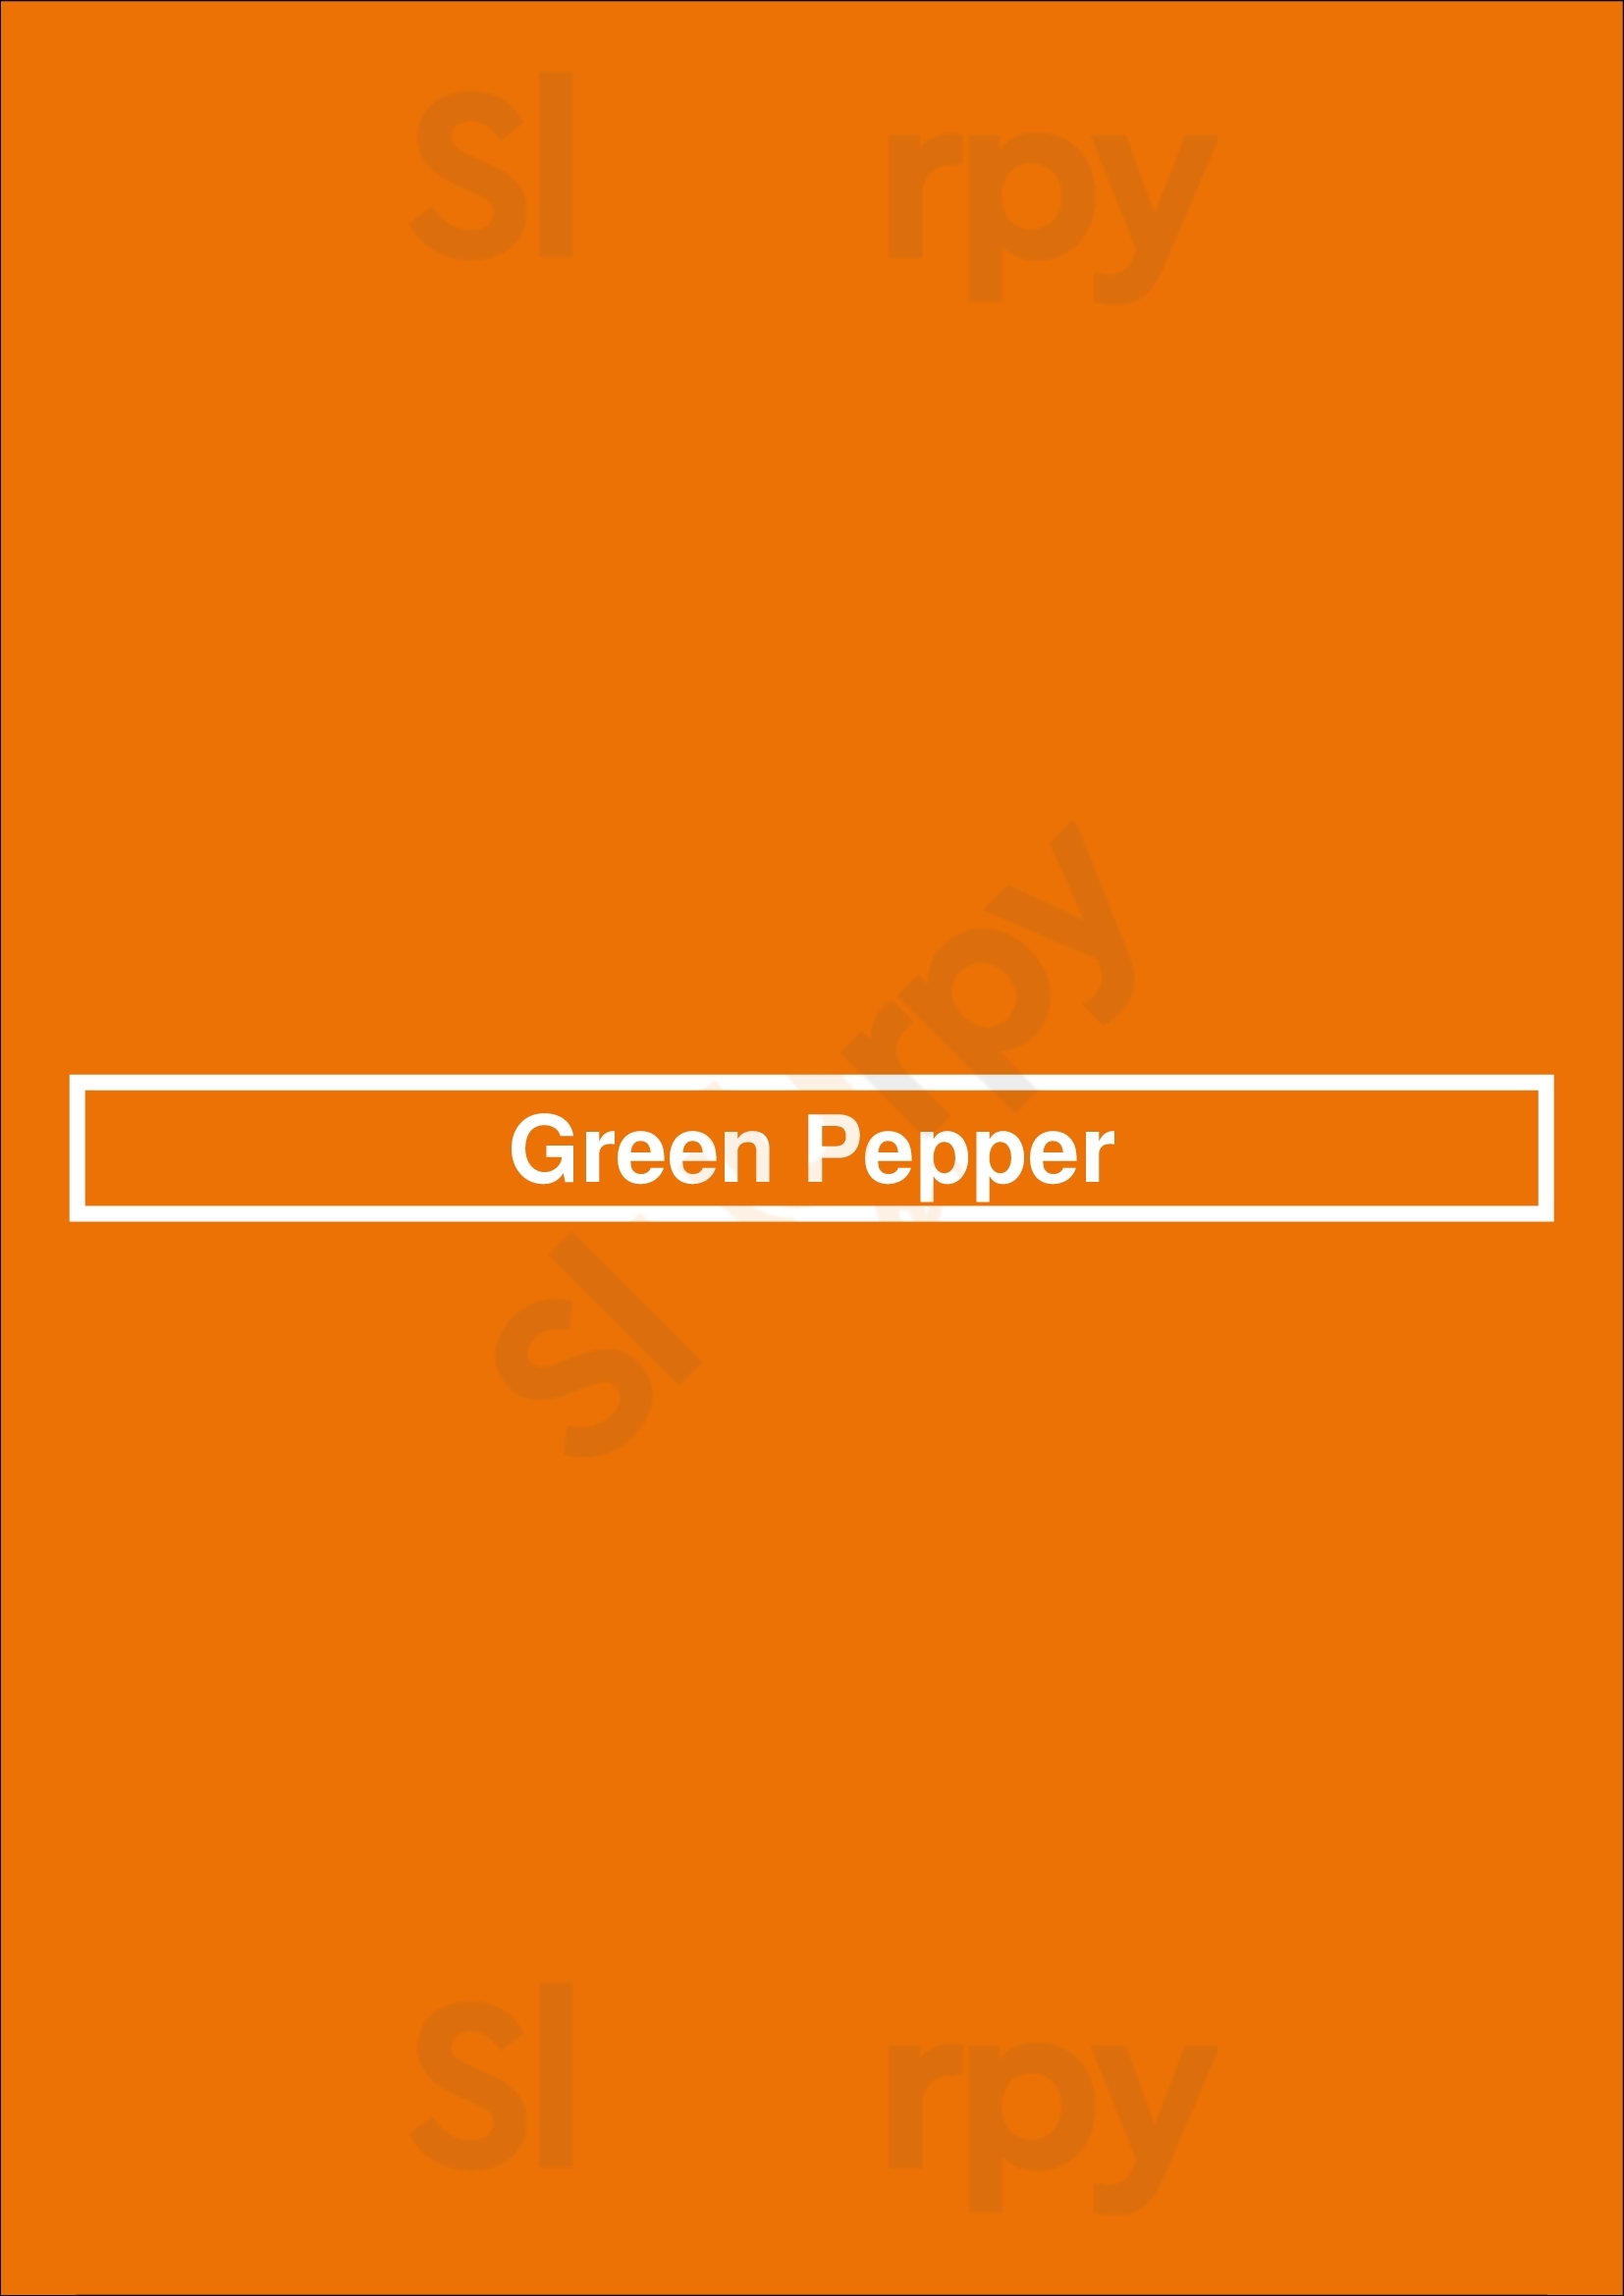 Green Pepper Lisboa Menu - 1